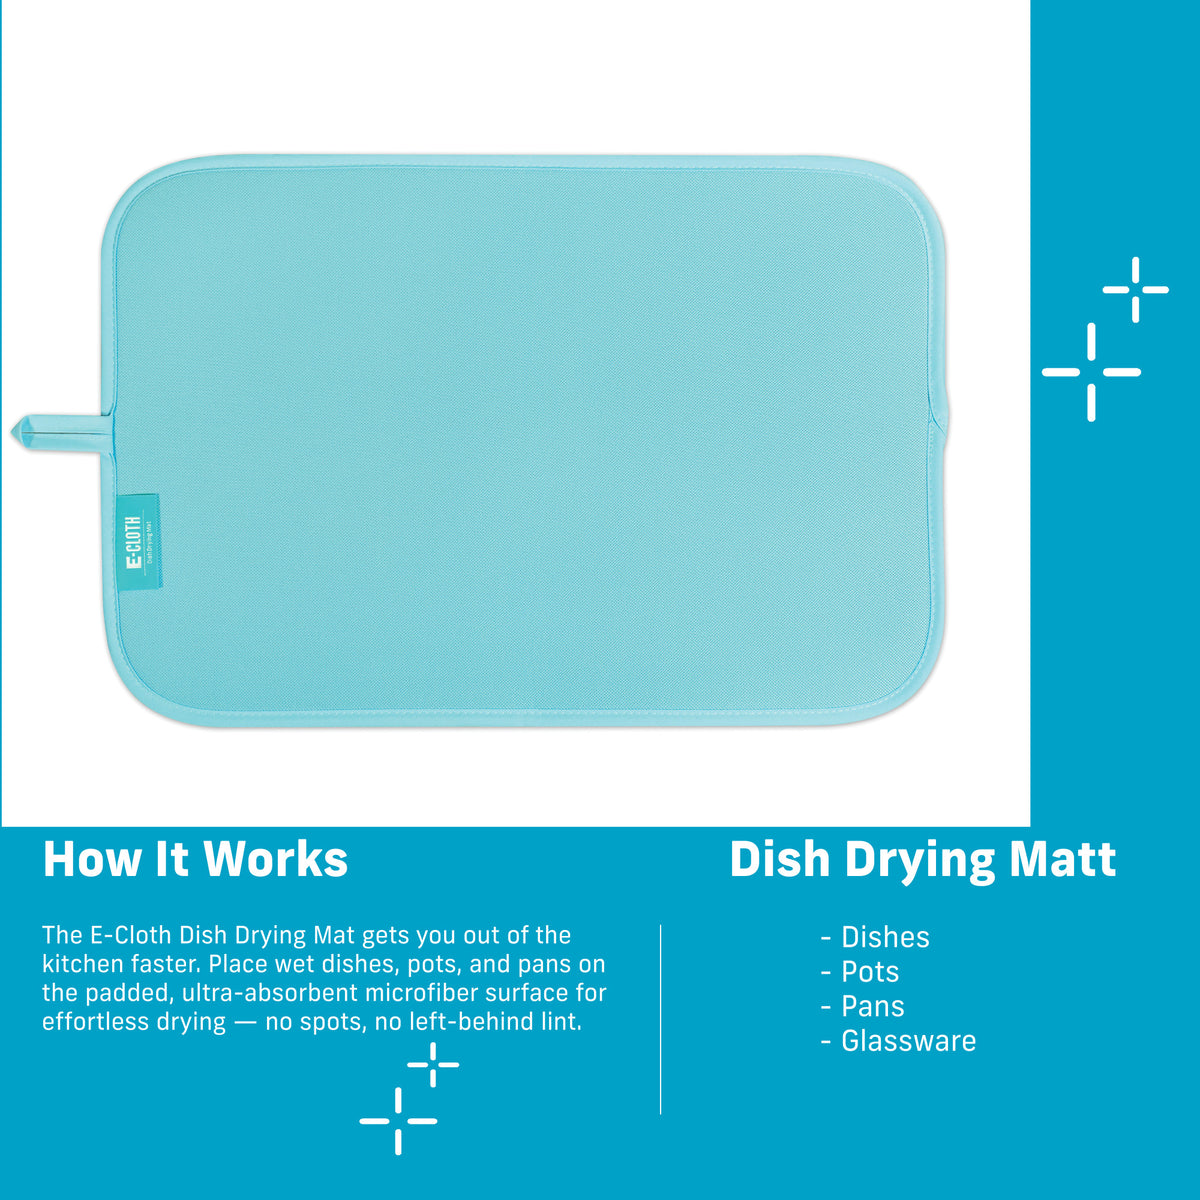 Dish Drying Mat